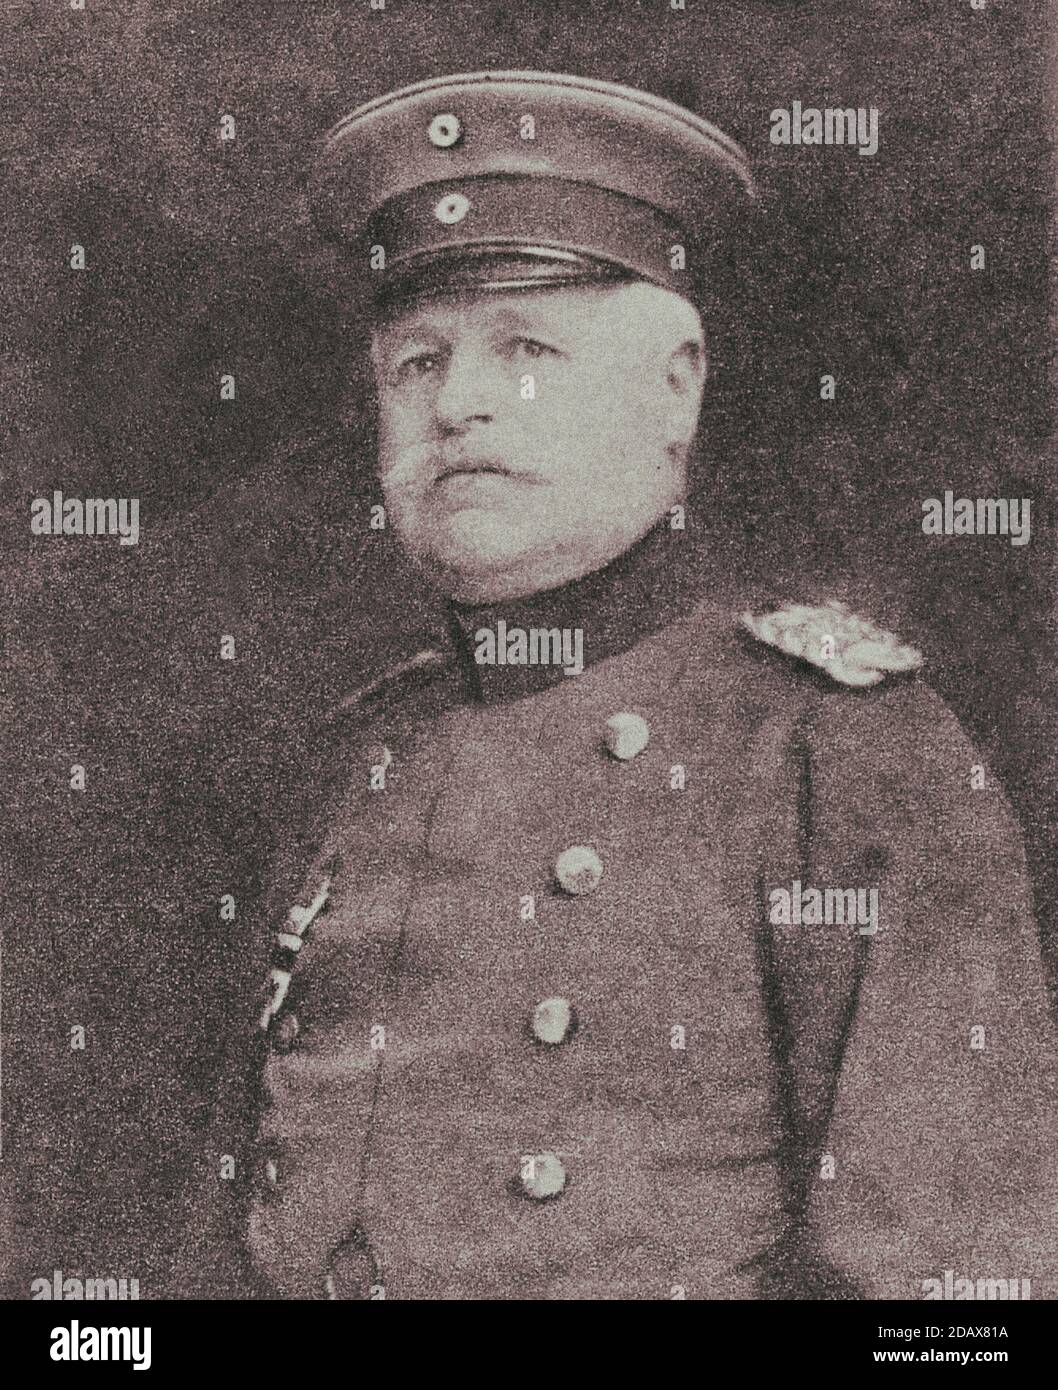 Retro photo of portrait of German Field-Marshal Hermann von Eichhorn Stock Photo